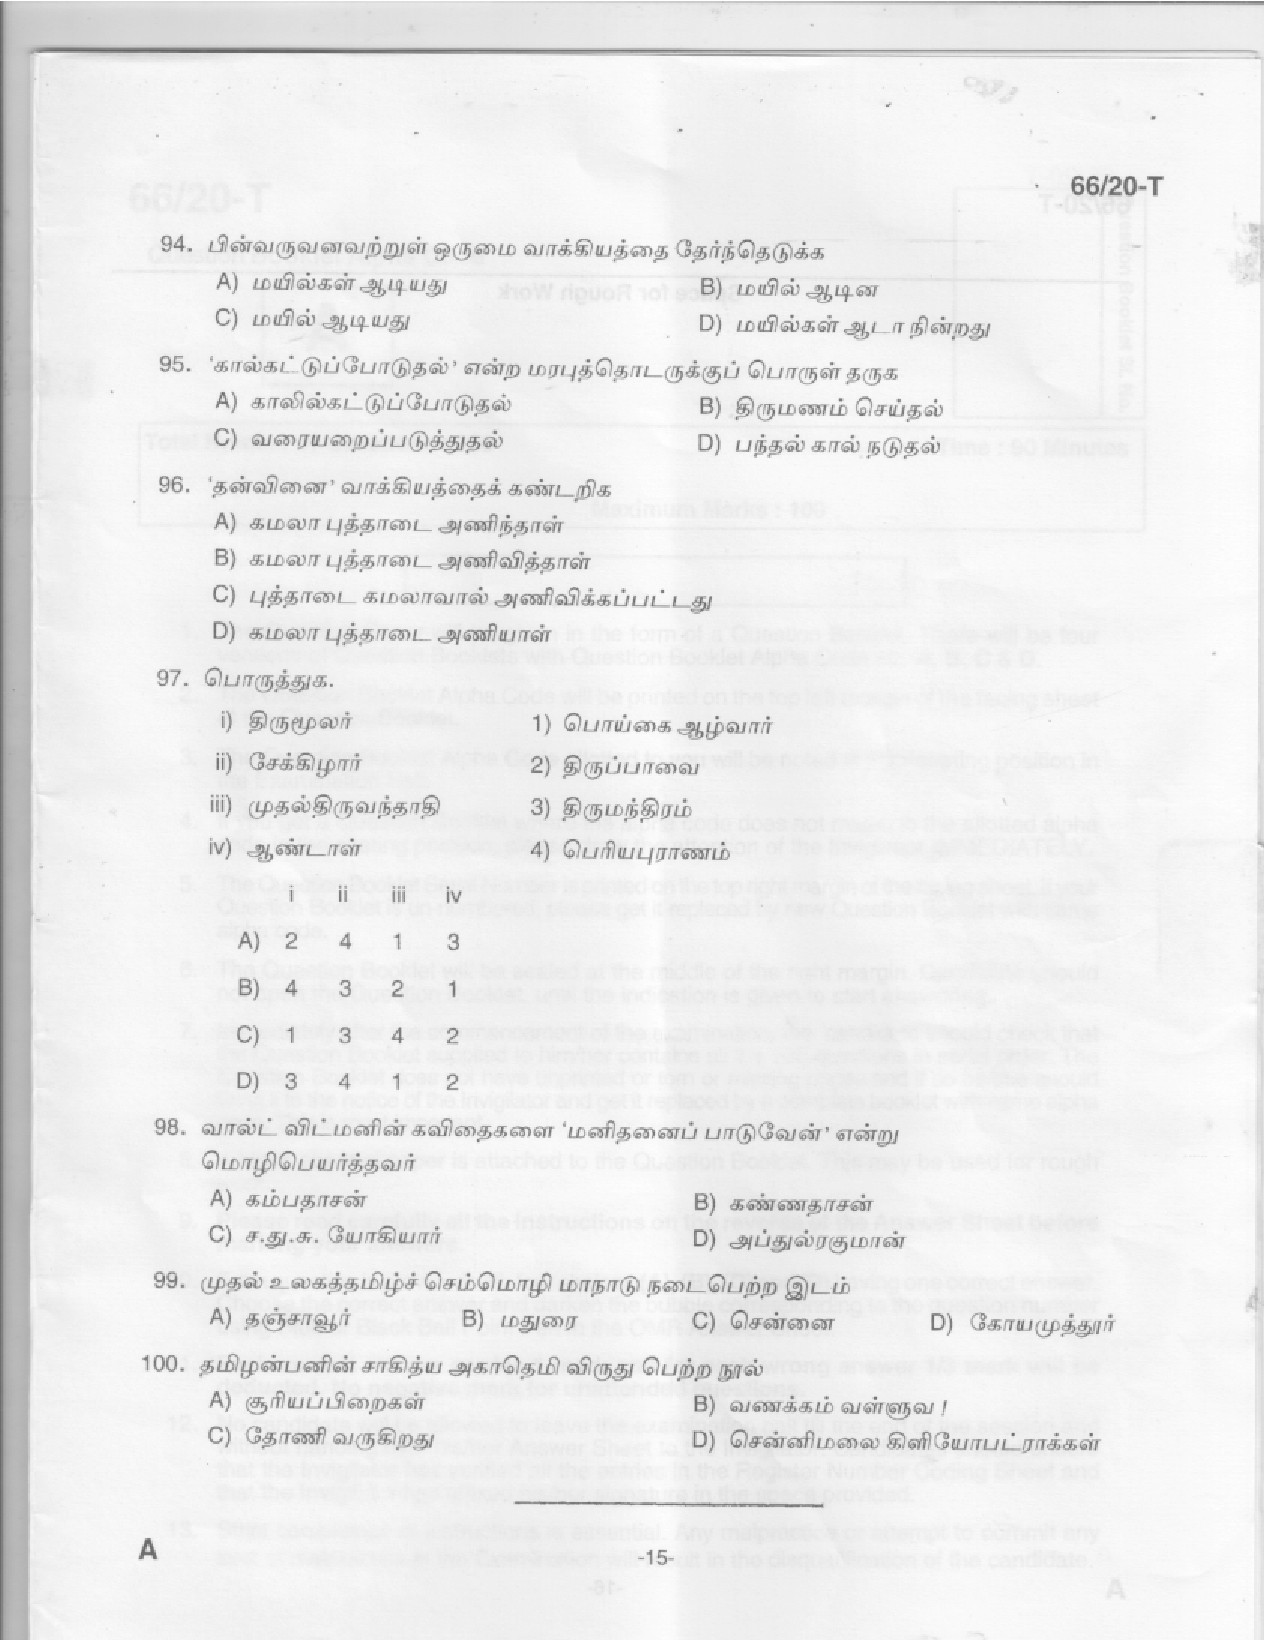 KAS Officer Paper II Tamil Exam 2020 Code 662020 T 14